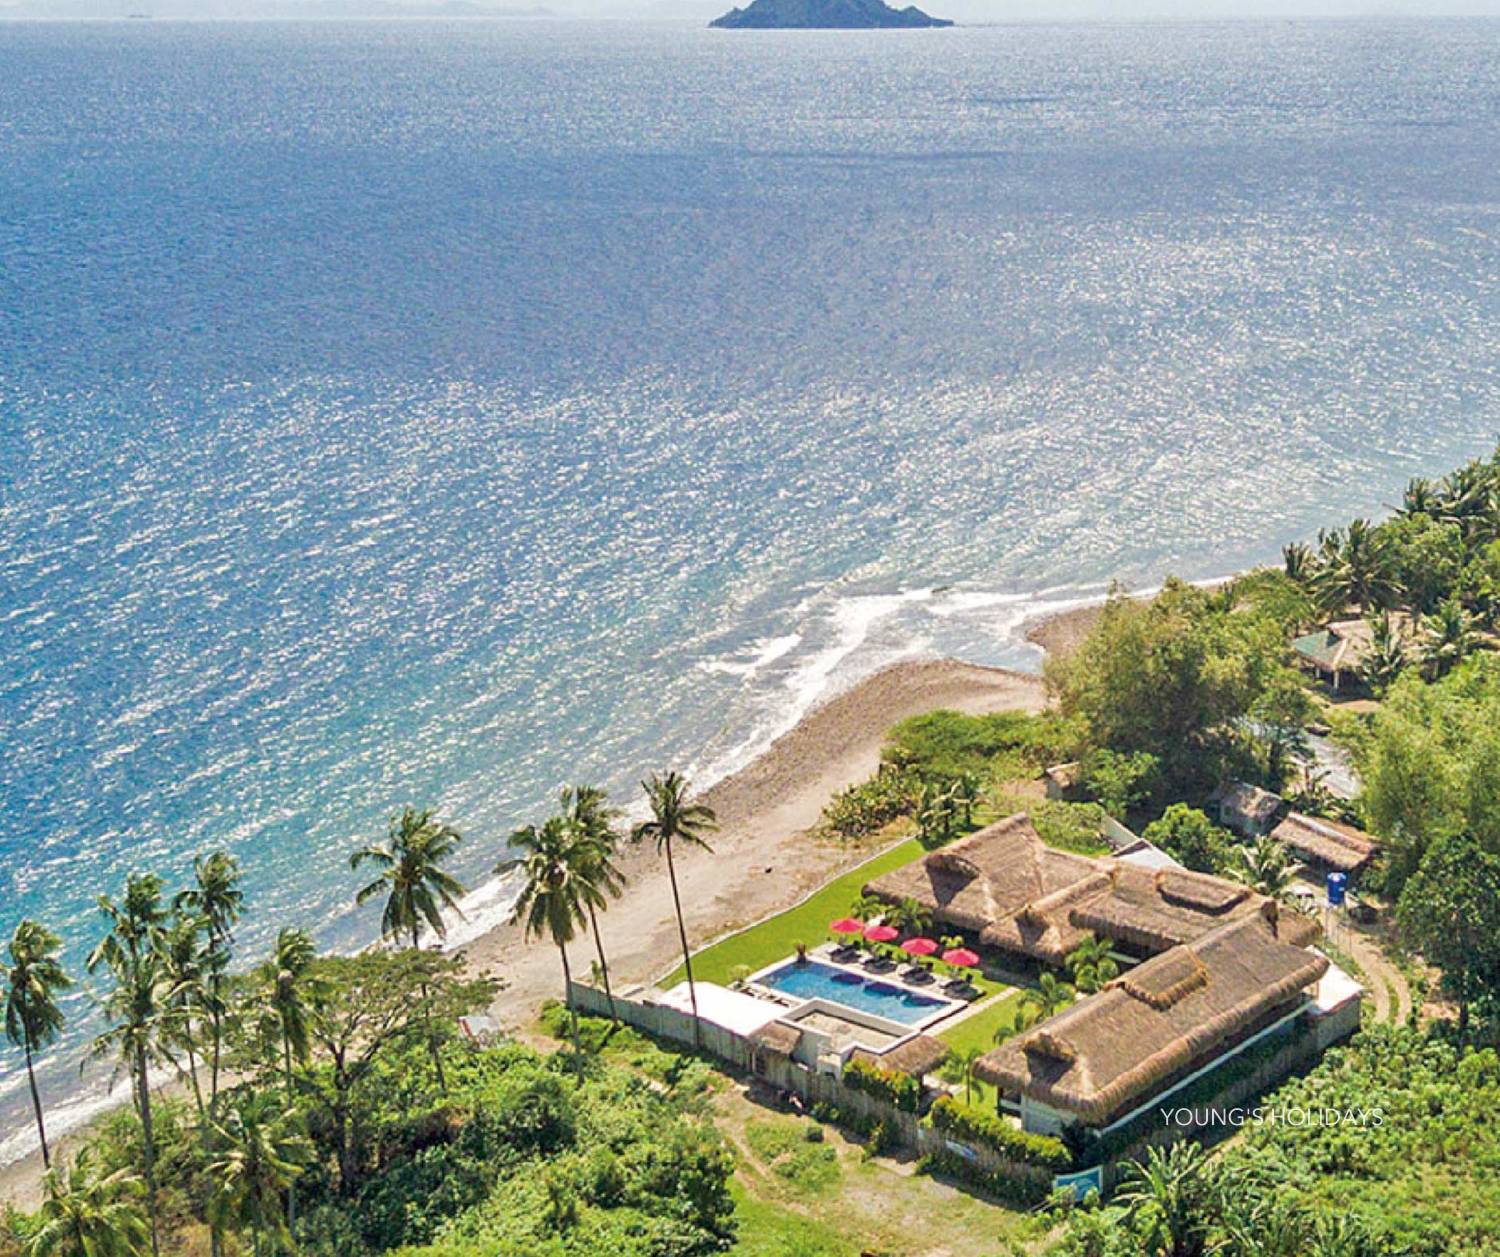 【菲律賓】杜馬加德 Azure Dive Resort 5日4夜潛水自由行套票